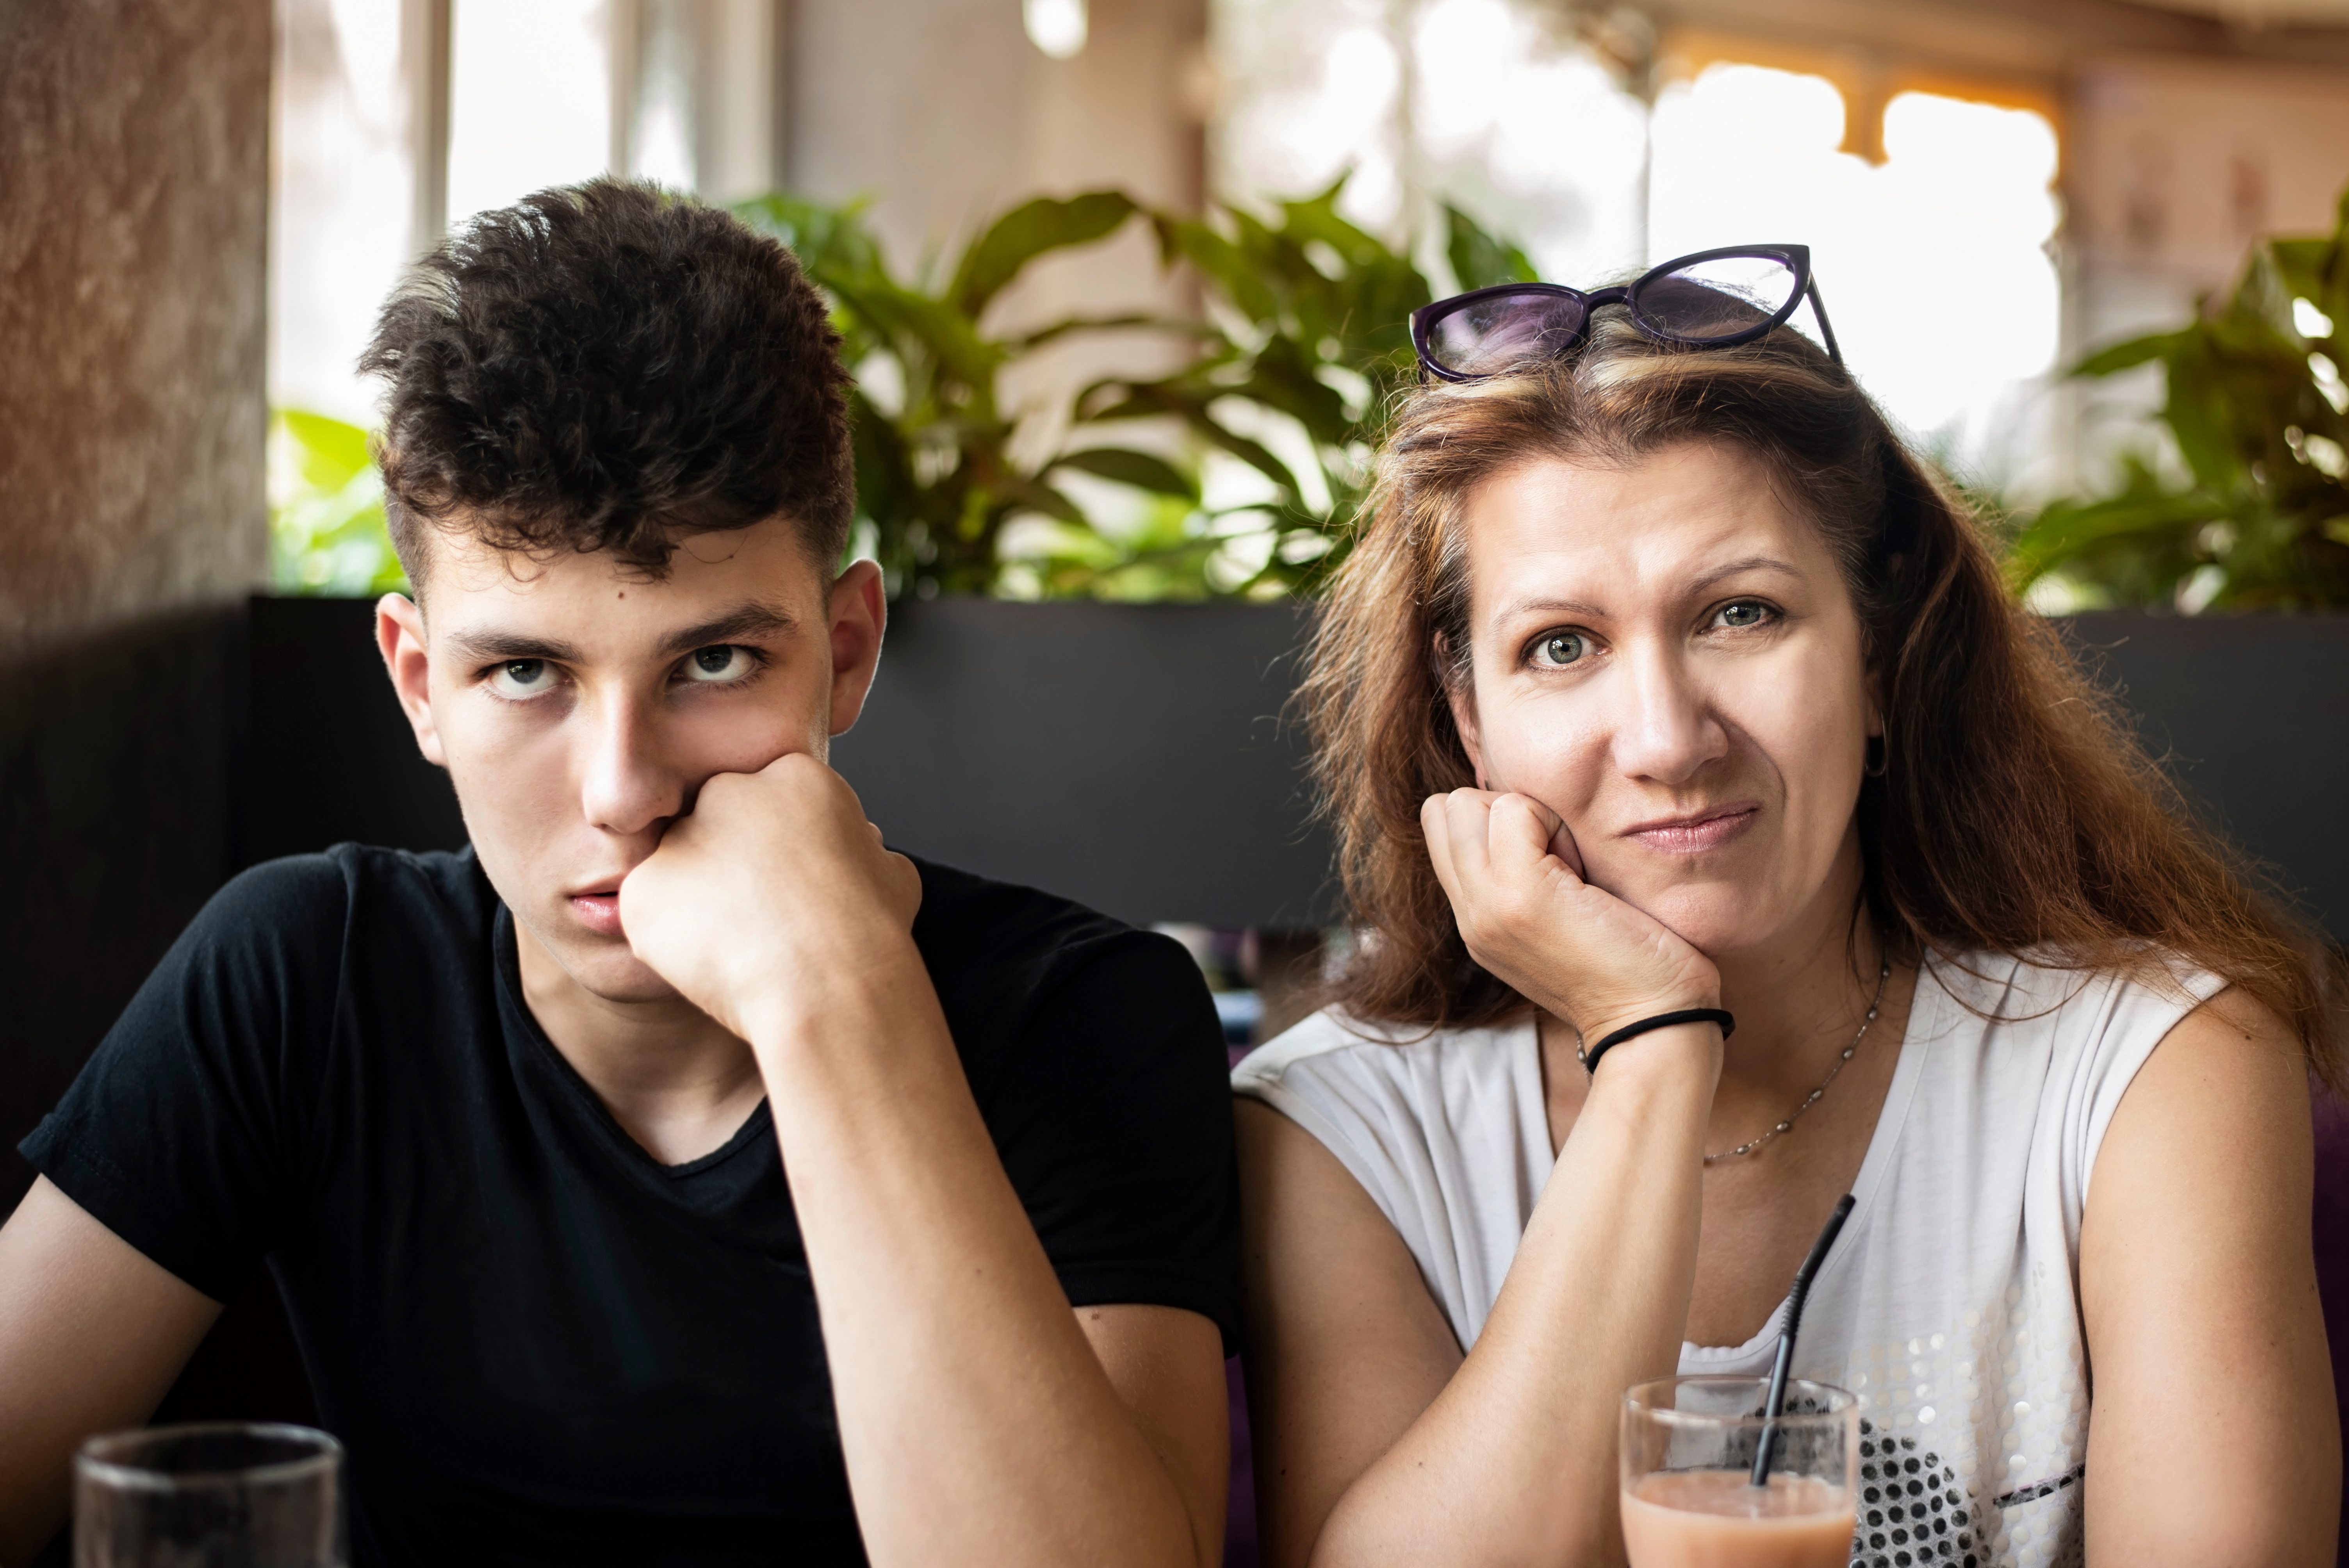 Adolescent frustré assis à côté d'une femme à l'expression confuse | Source : Shutterstock